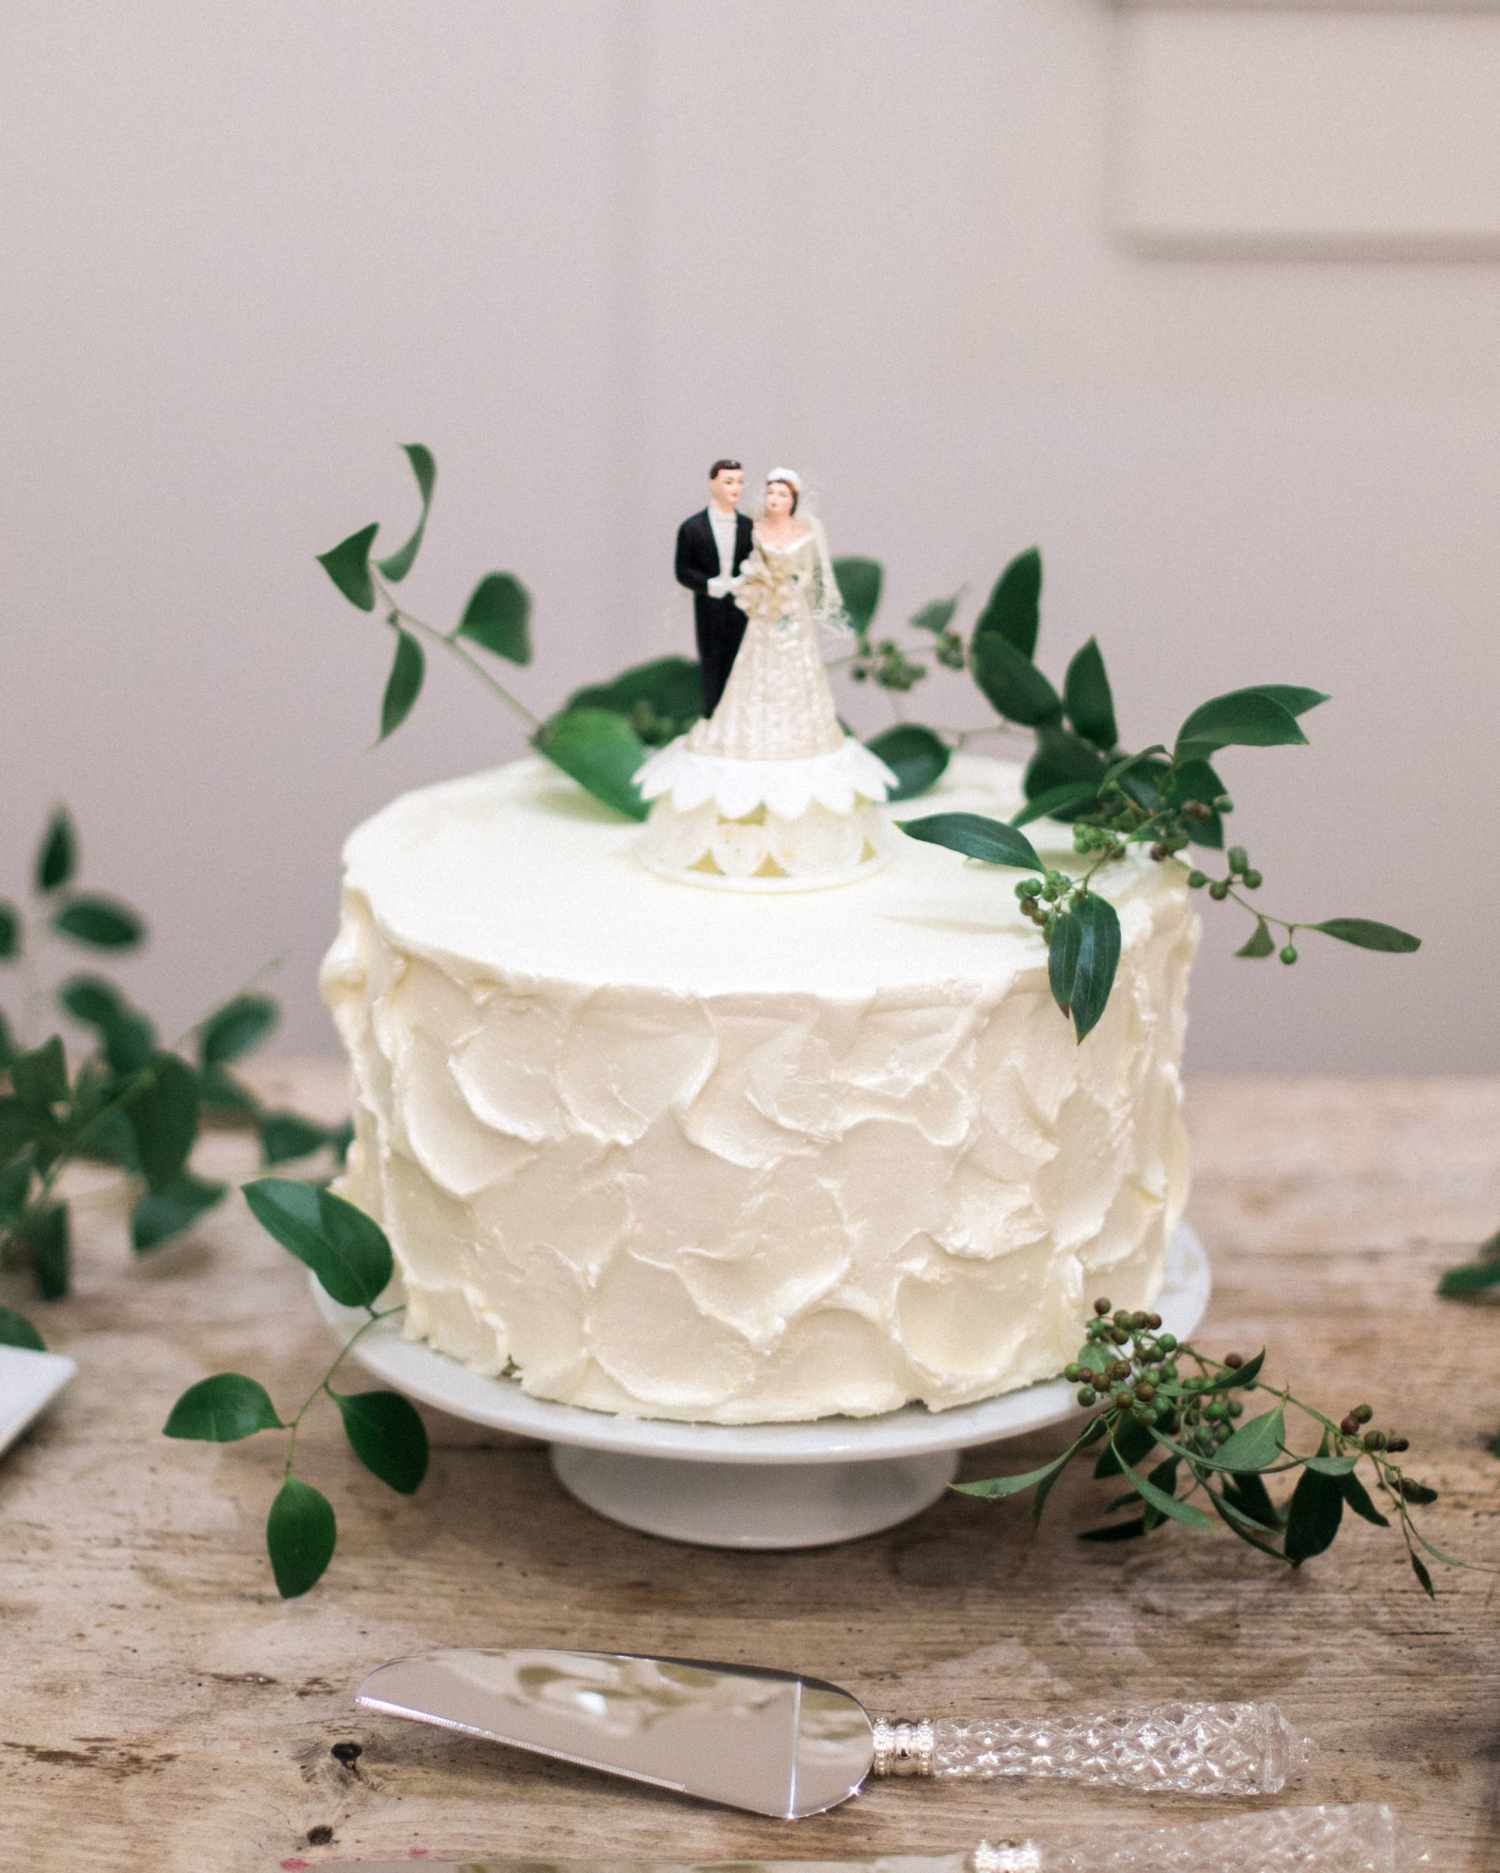 rachel-tyson-wedding-cake-363-s112158-0915.jpg